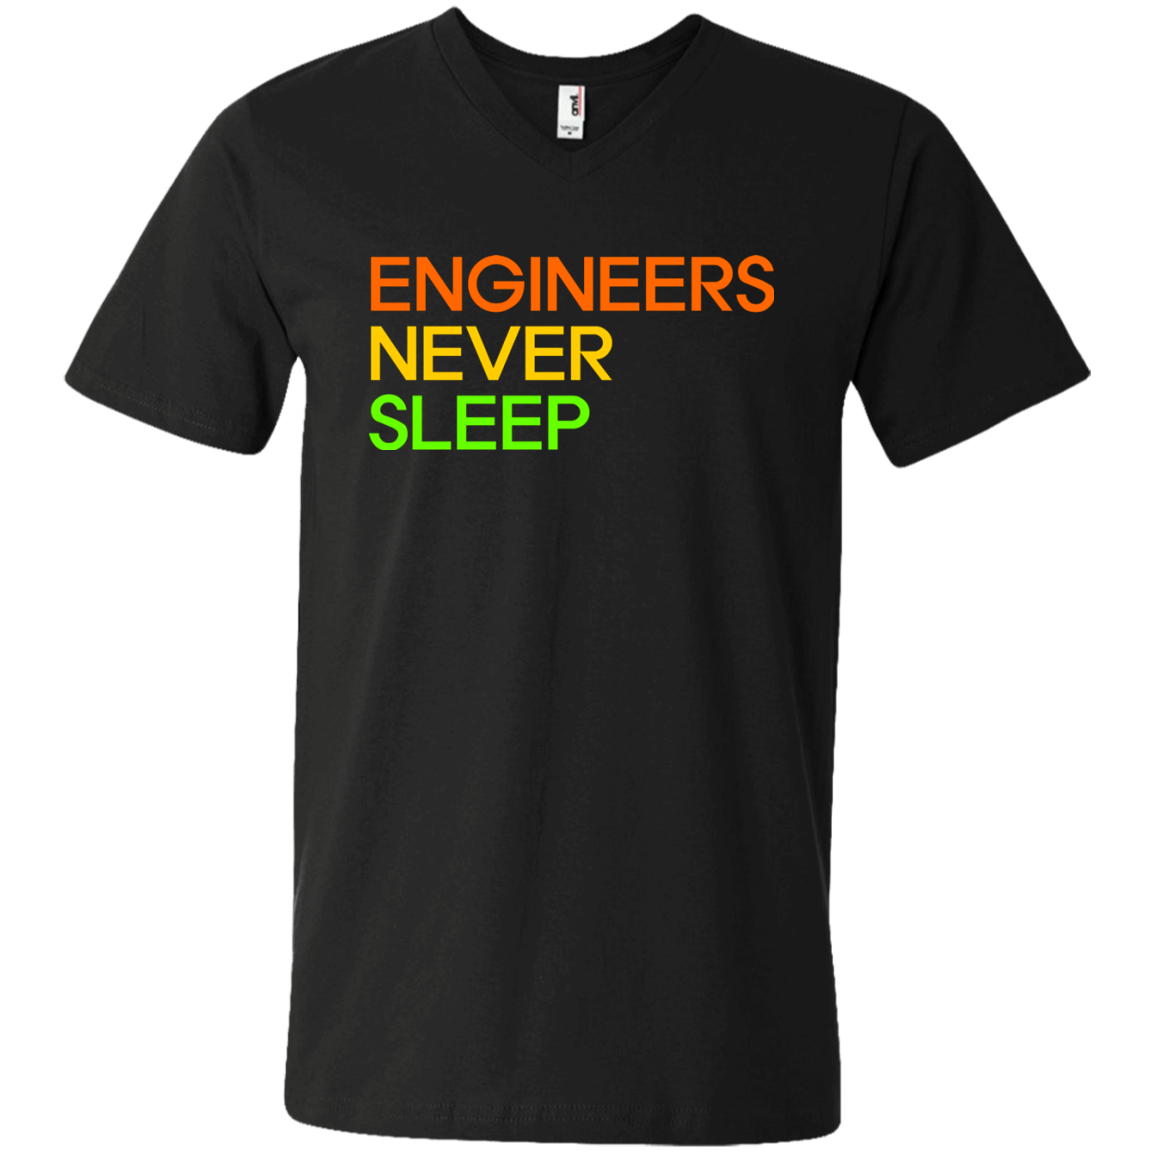 Los ingenieros nunca duermen